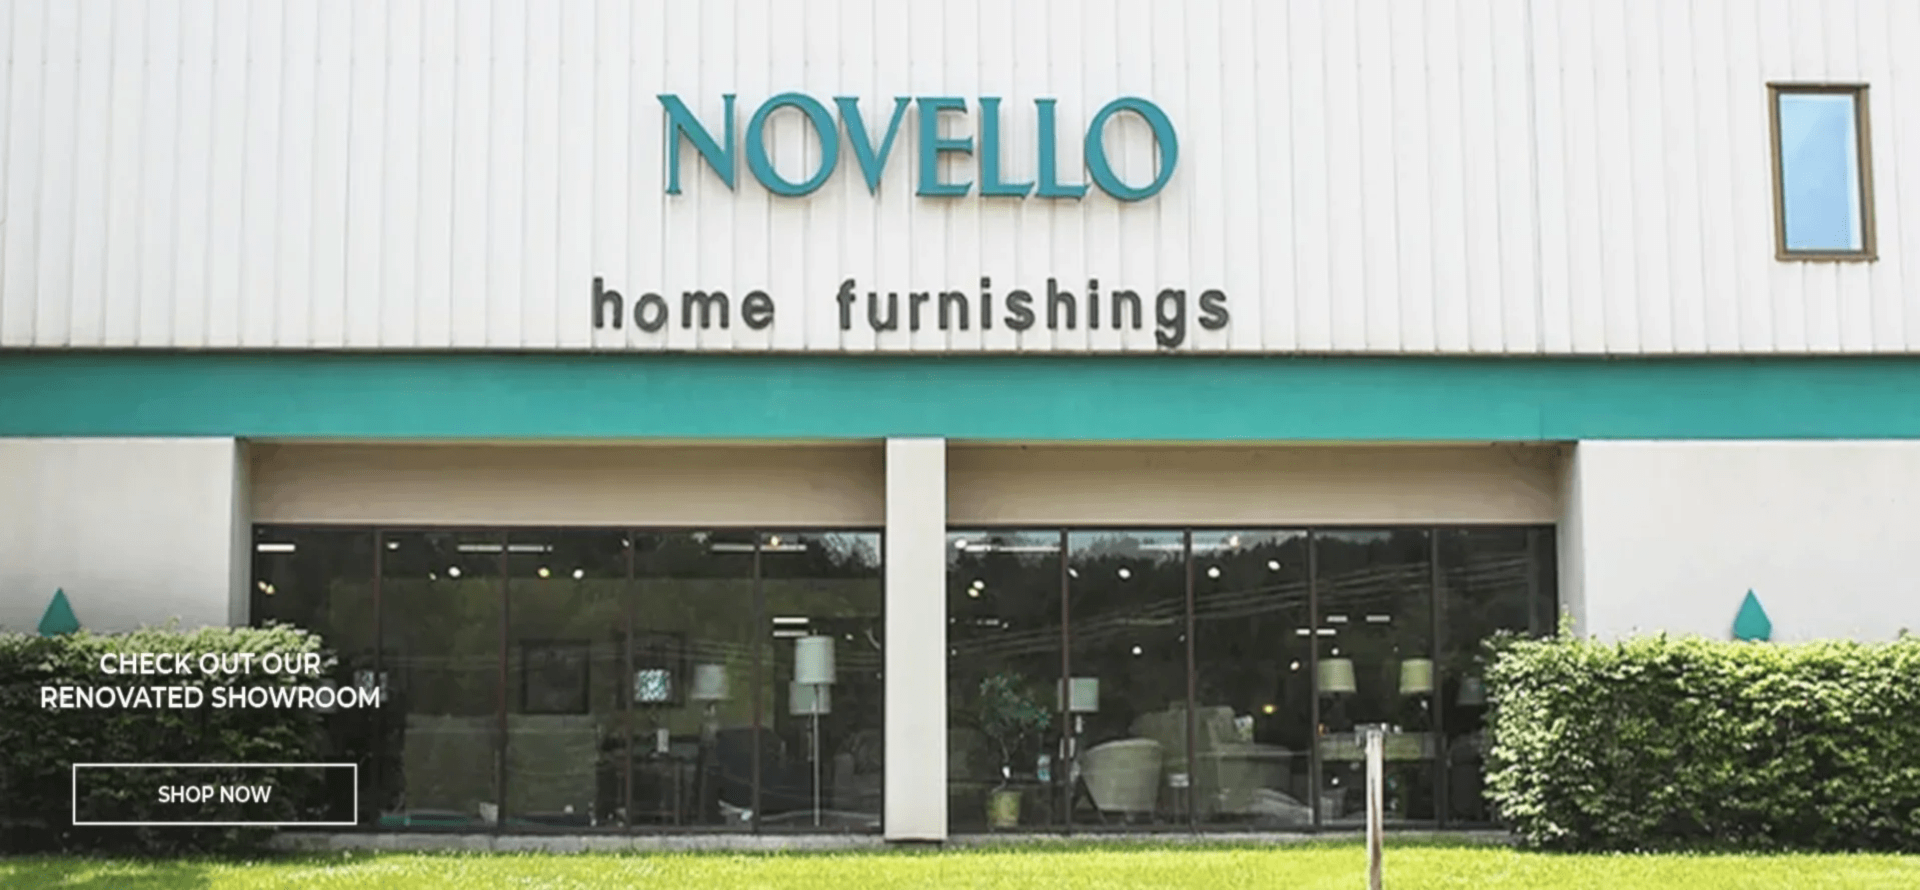 Novello home furnishings shop now